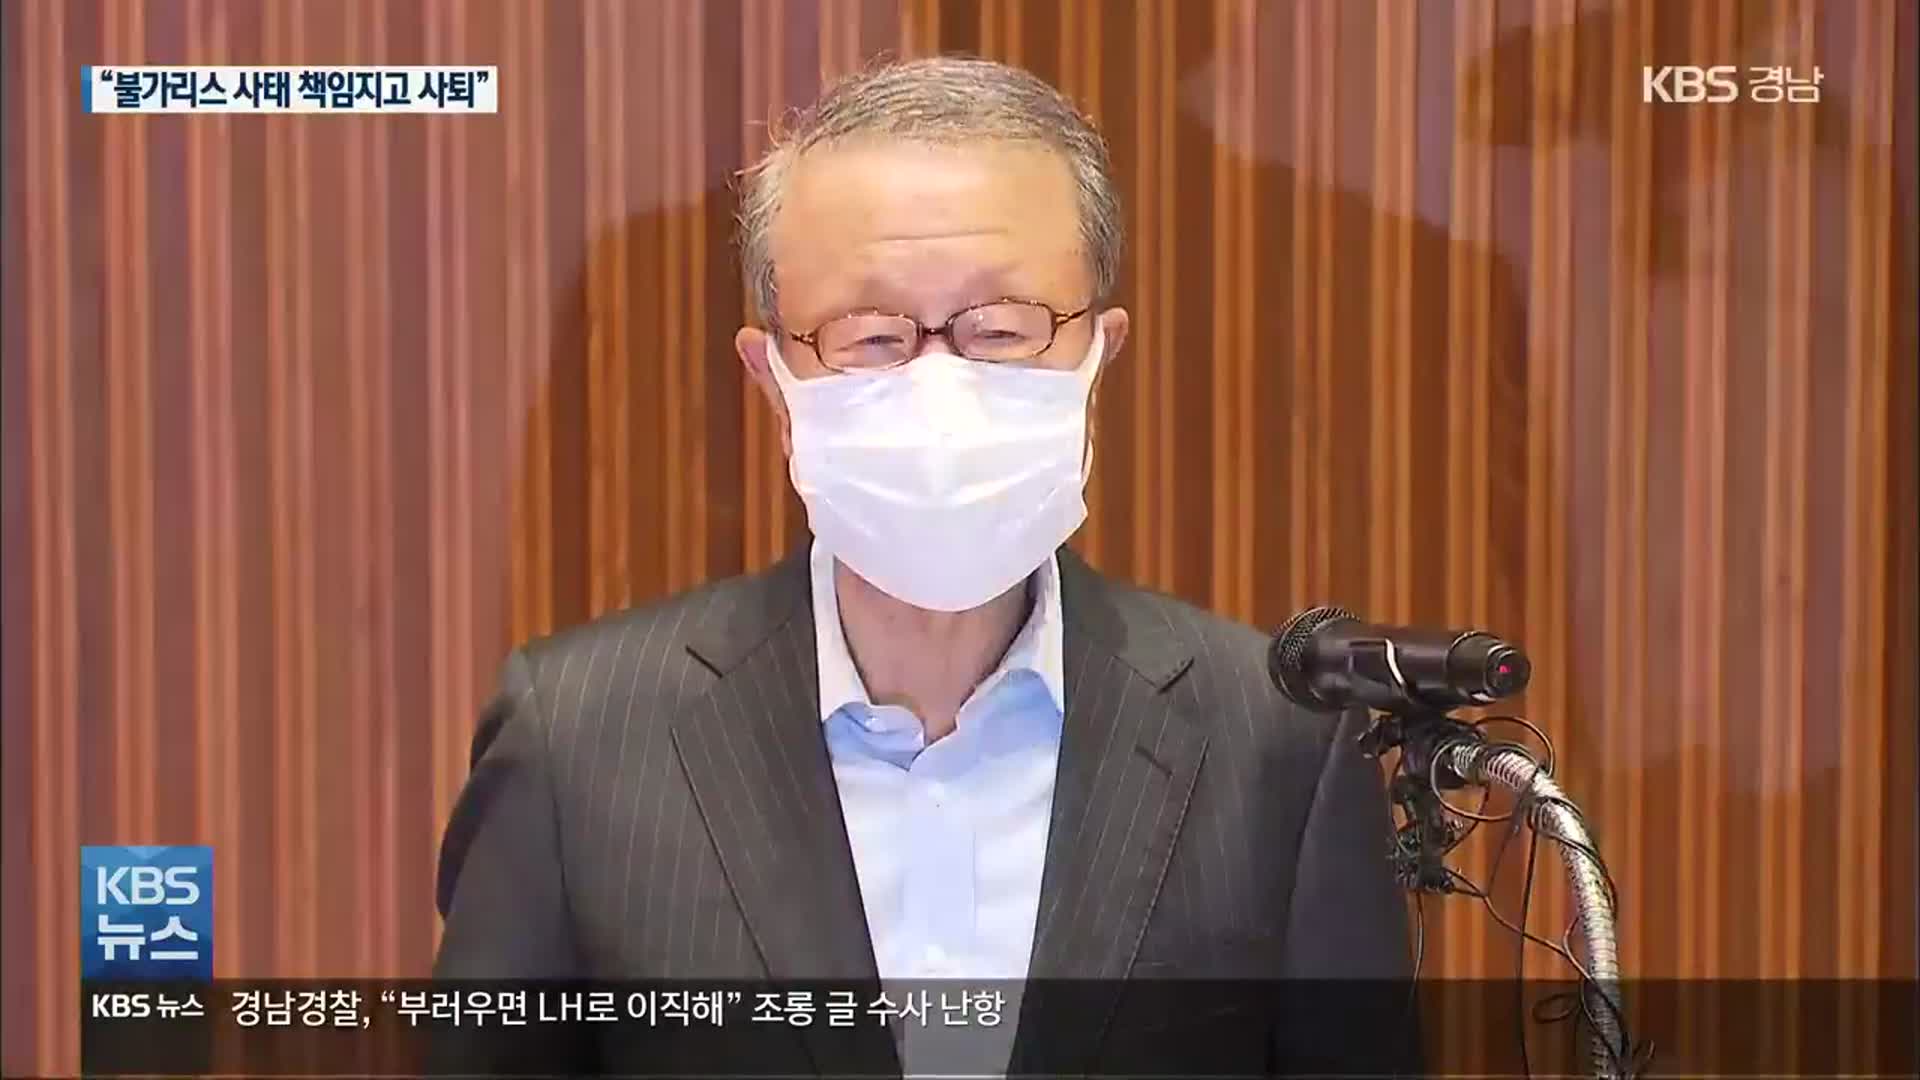 홍원식 남양유업 회장 “불가리스 사태 책임 지고 사퇴”